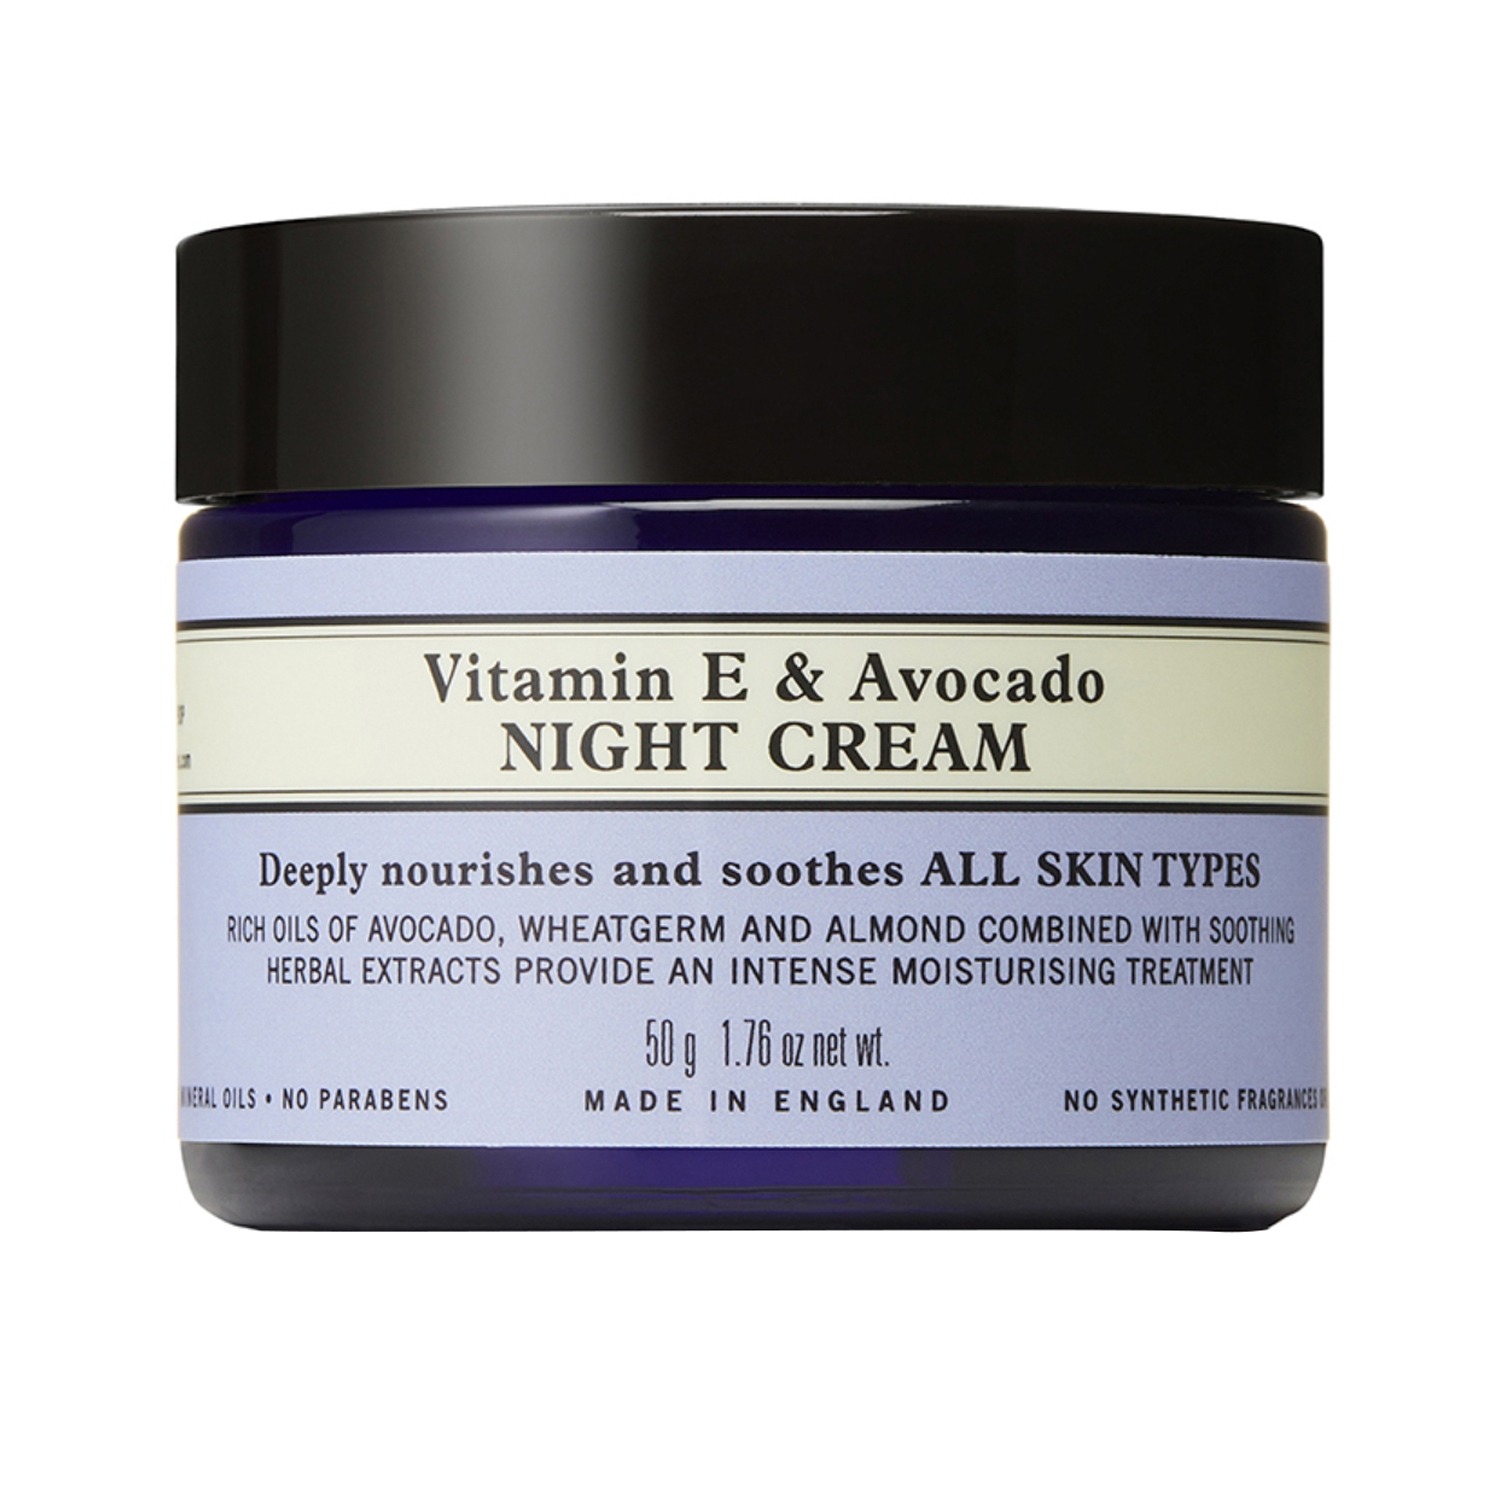 Neal's Yard Remedies | Neal's Yard Remedies Vitamin E & Avocado Night Cream (50g)